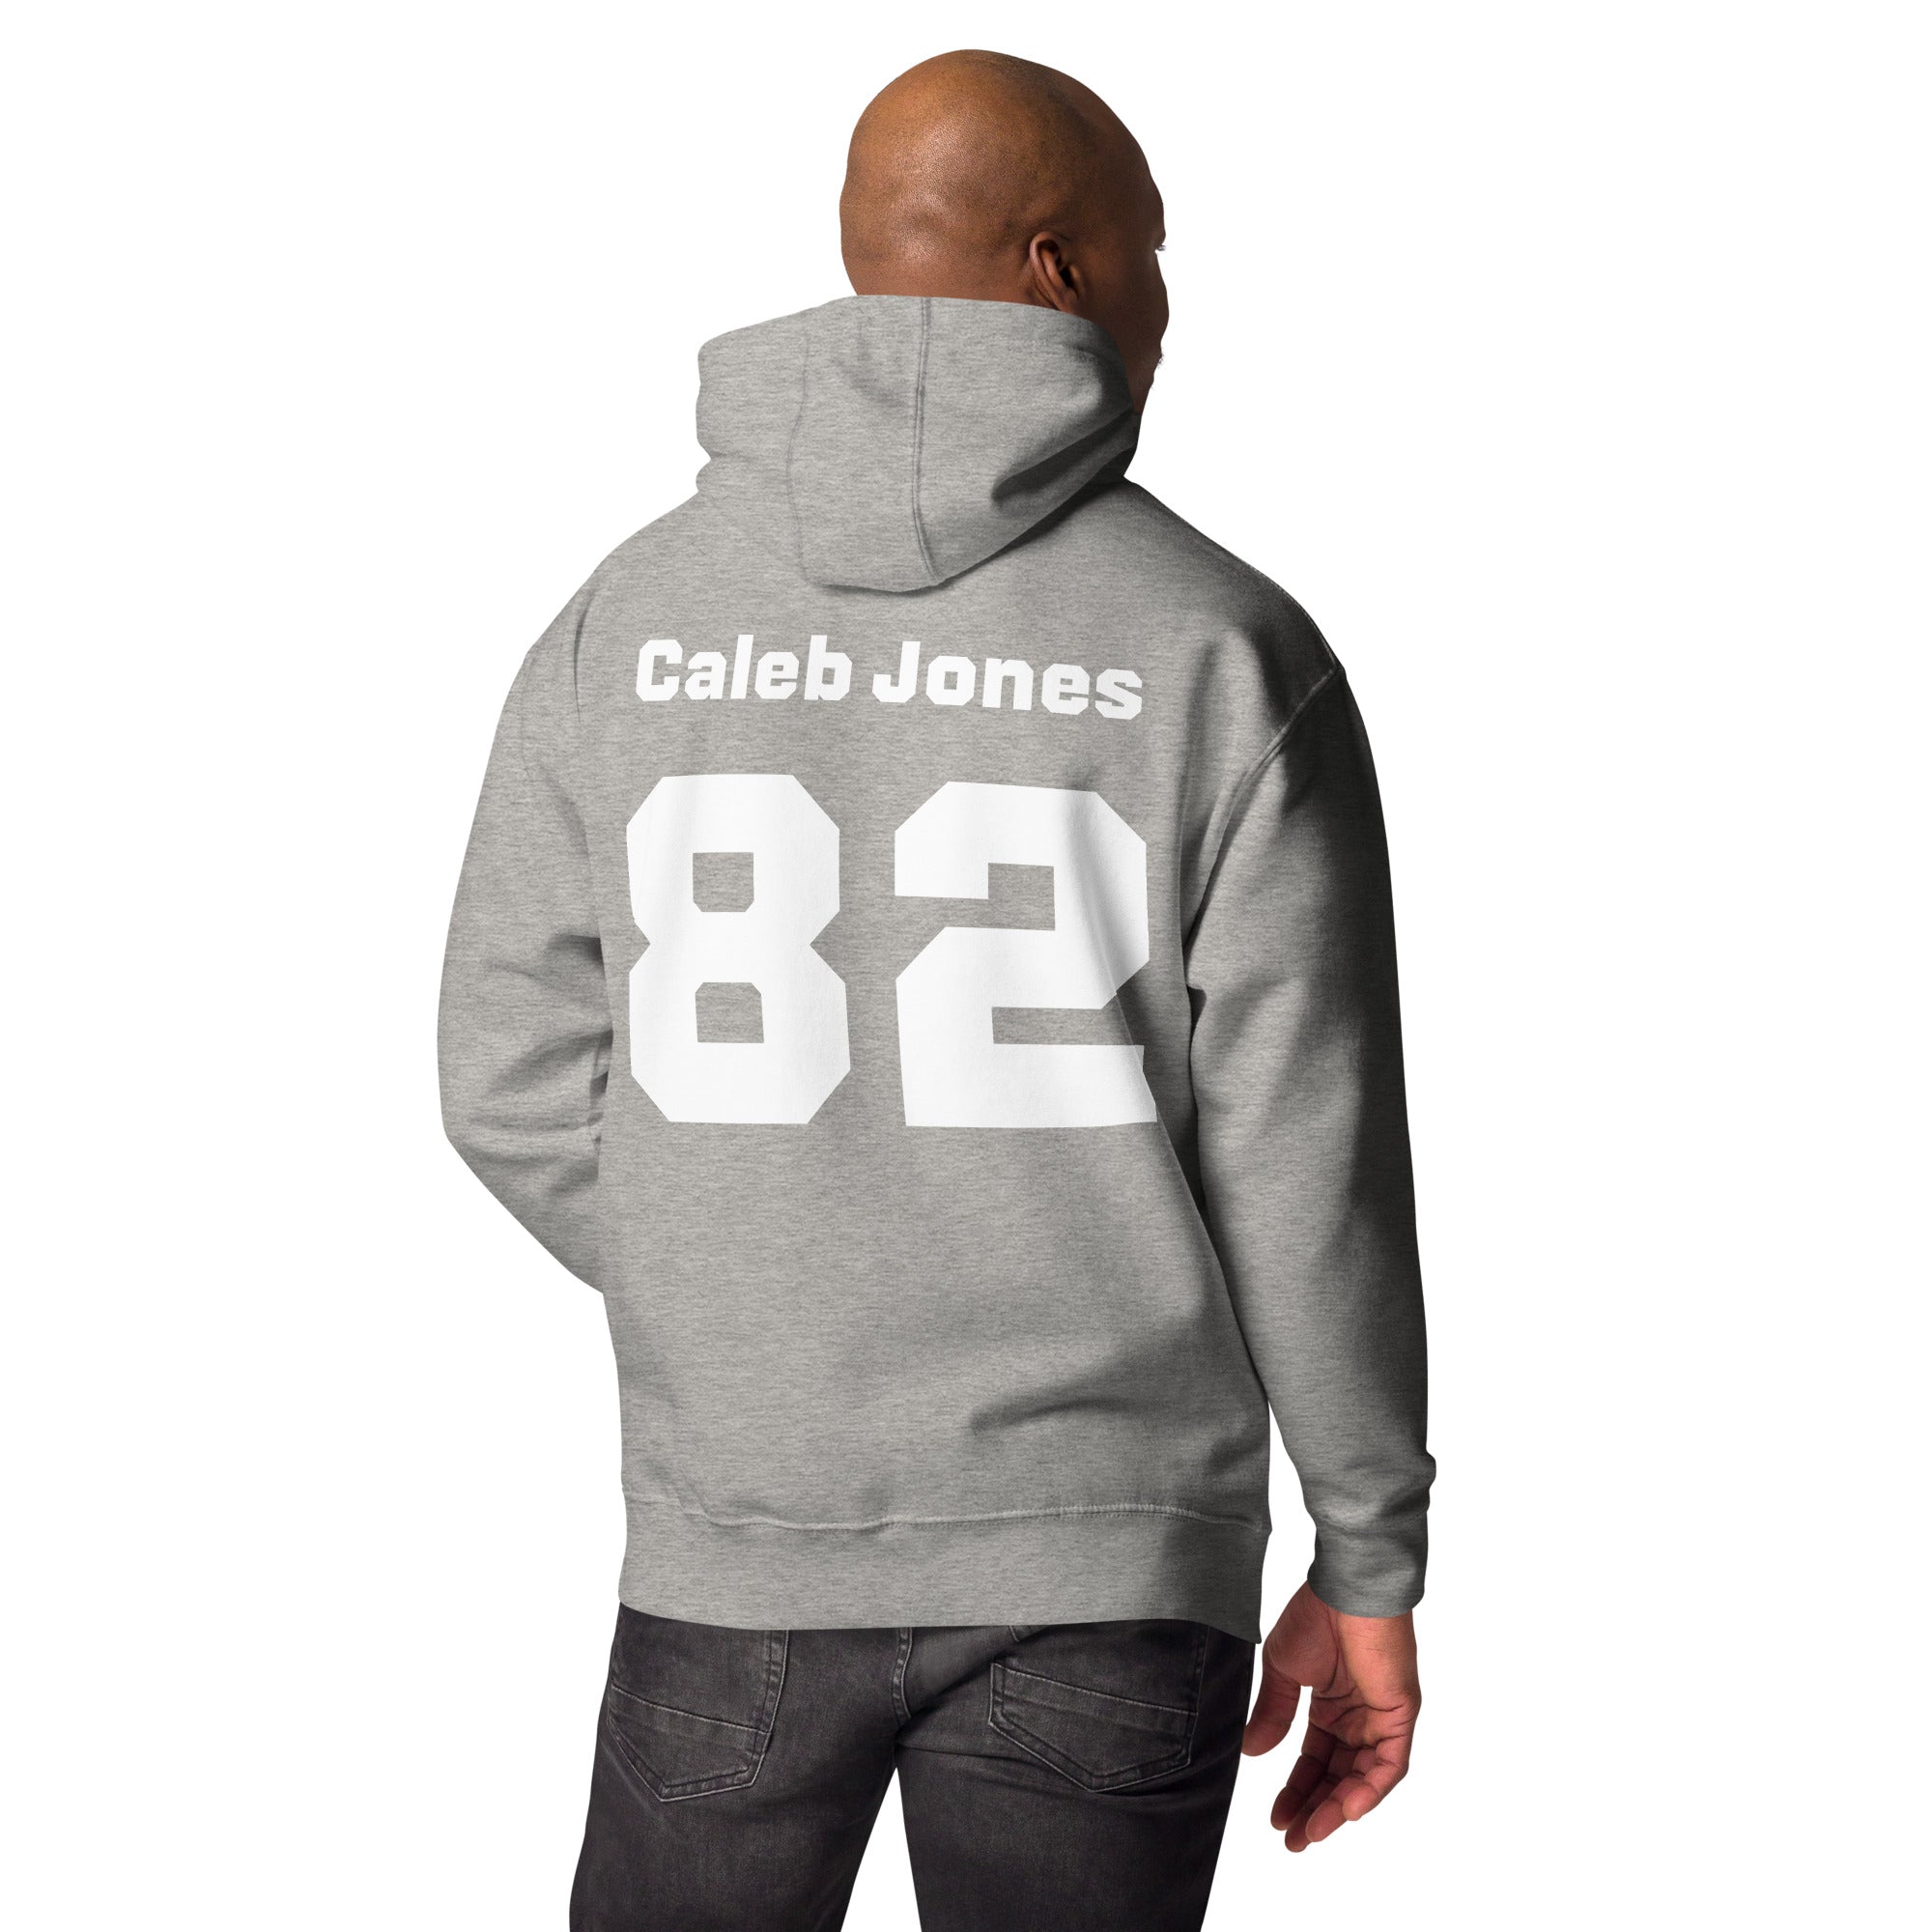 Caleb Jones - Unisex Hoodie